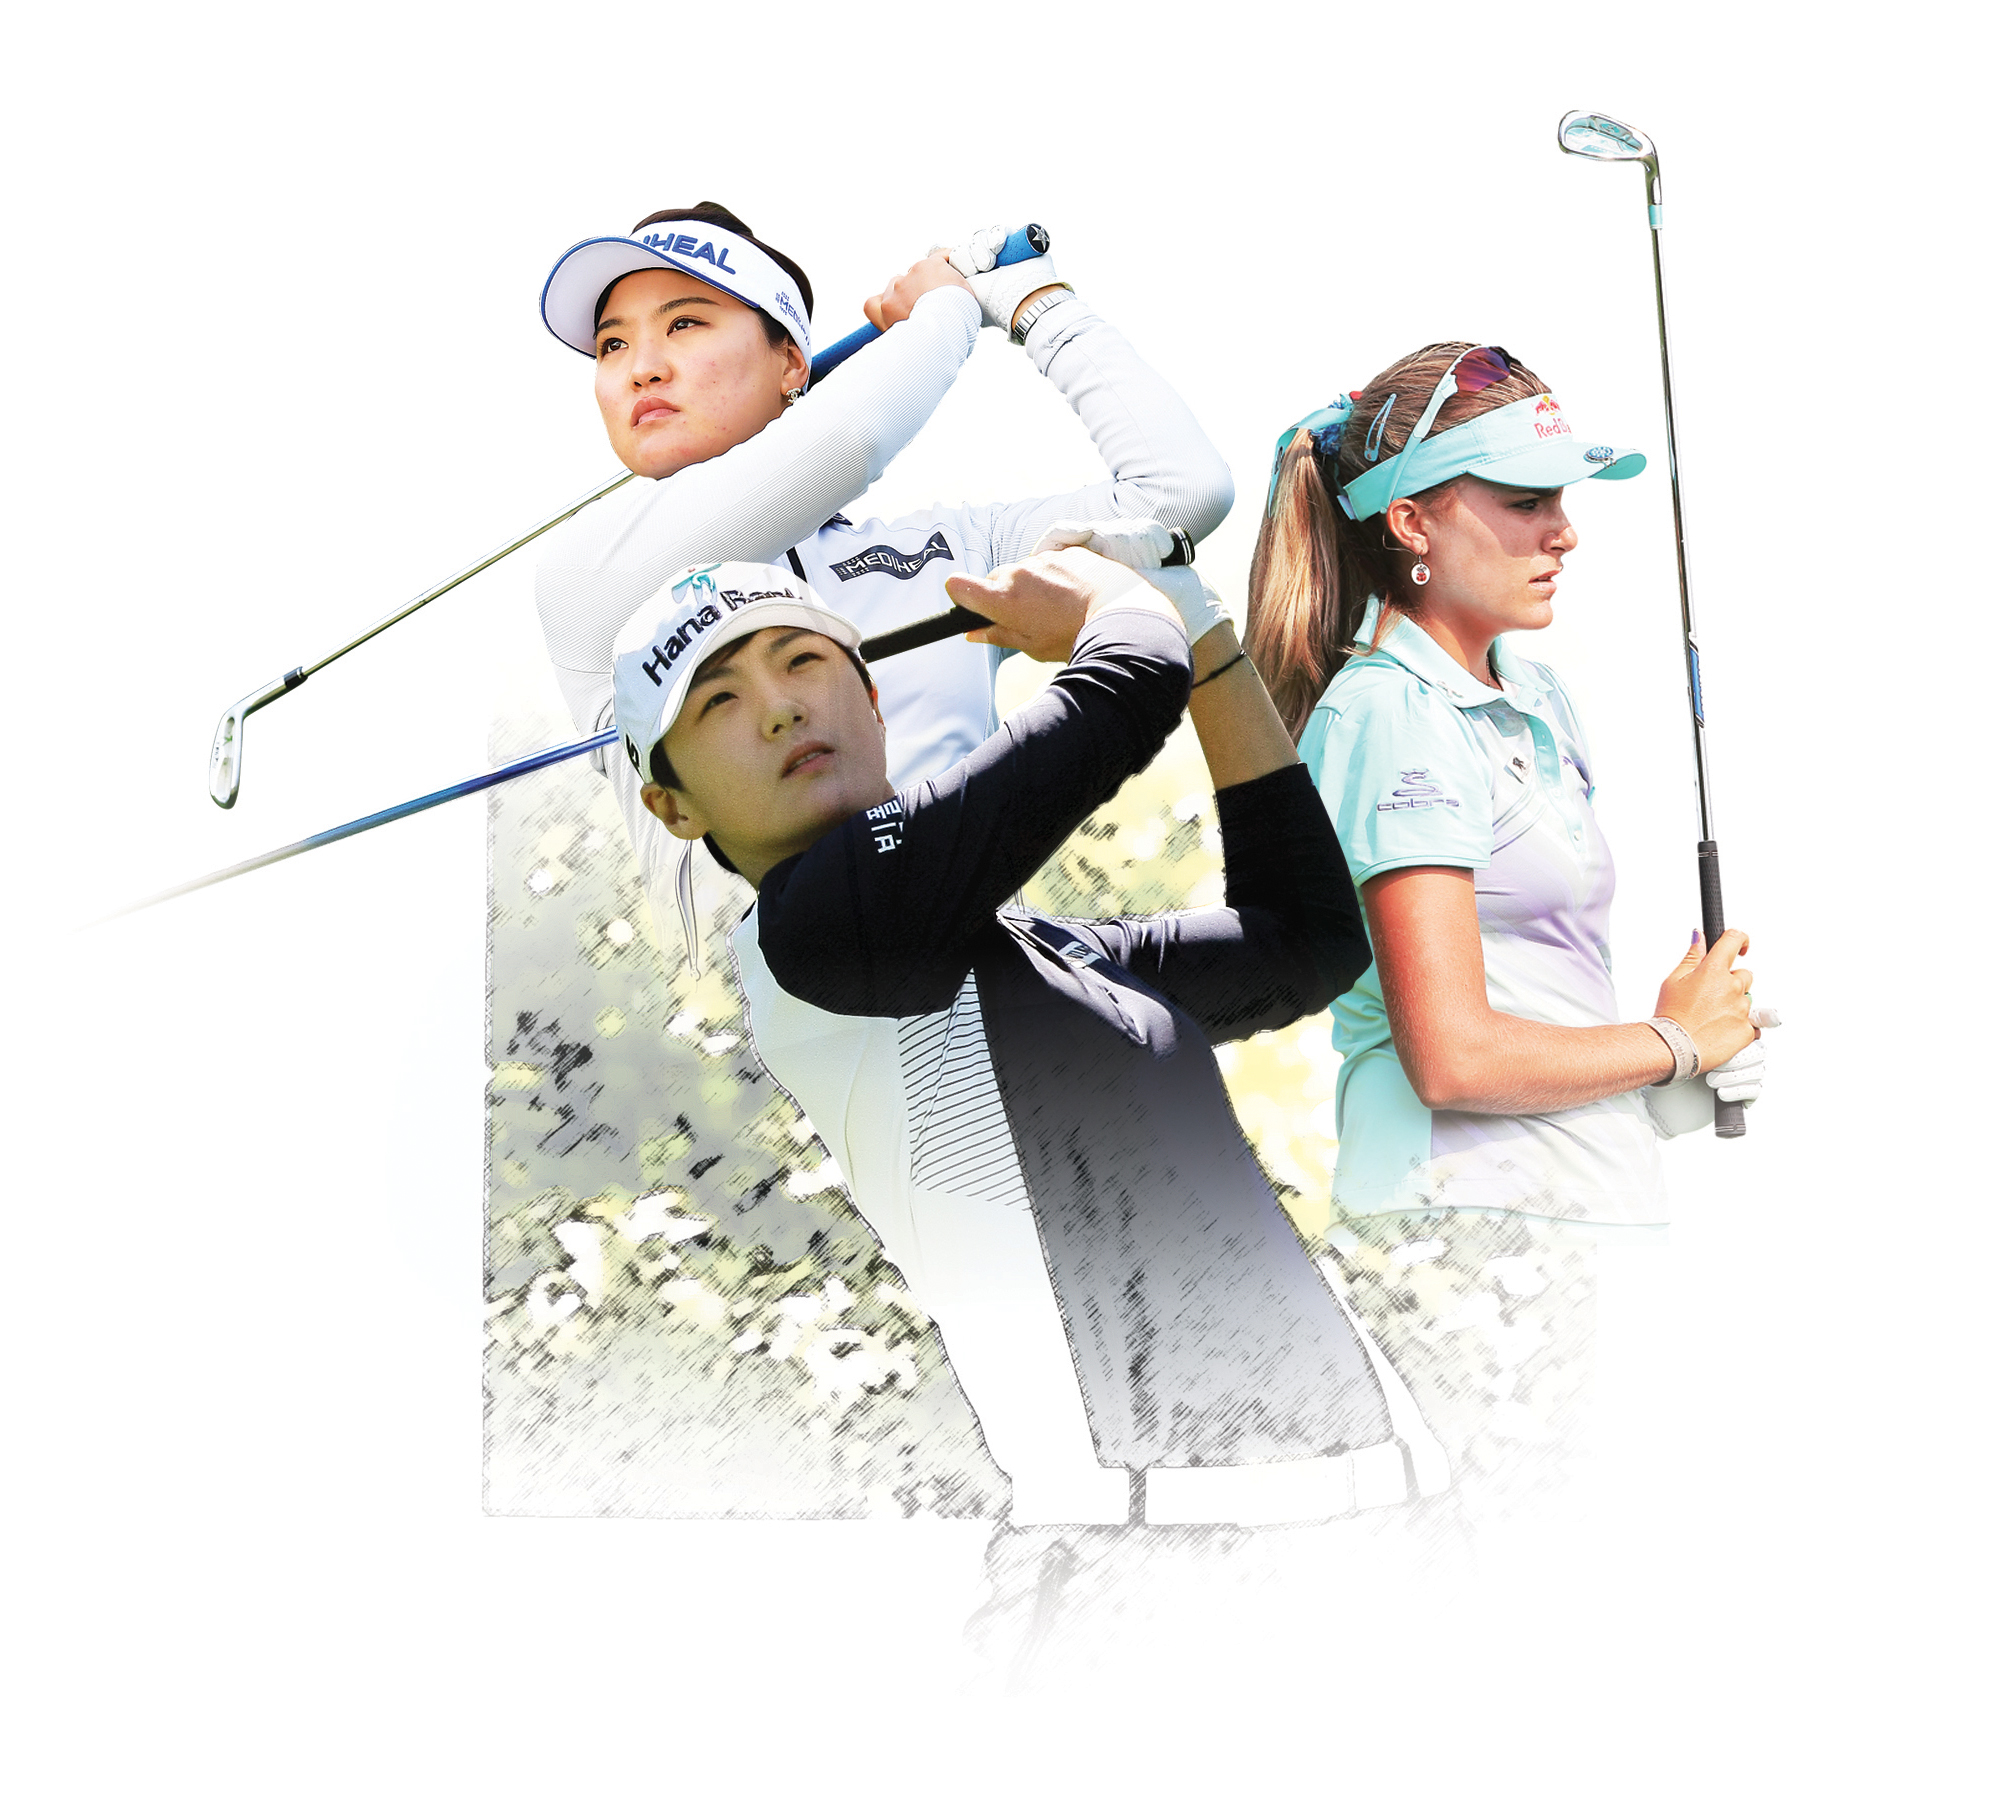 LPGA 투어 KEB하나은행 챔피언십에 출전하는 유소연(윗줄 왼쪽)과 렉시 톰프슨(오른쪽), 박성현.                KEB하나은행 제공 